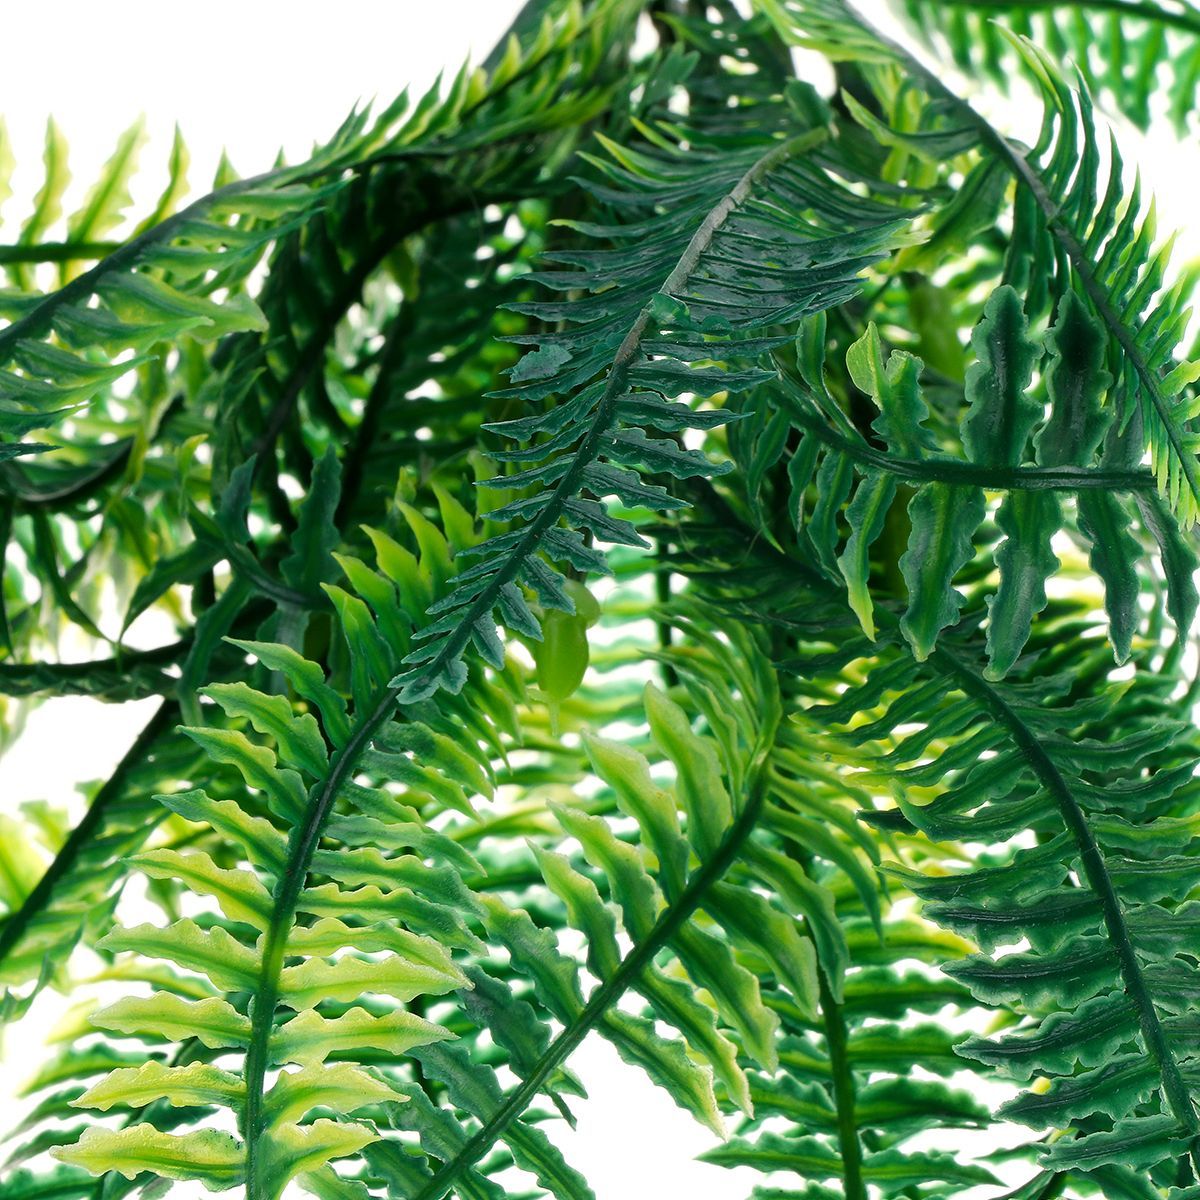 Simulation-Persian-Leaf-Grass-Plant-Wall-Decoration-Lifelike-Artificial-Fern-Foliage-Bush-Plants-Ind-1718778